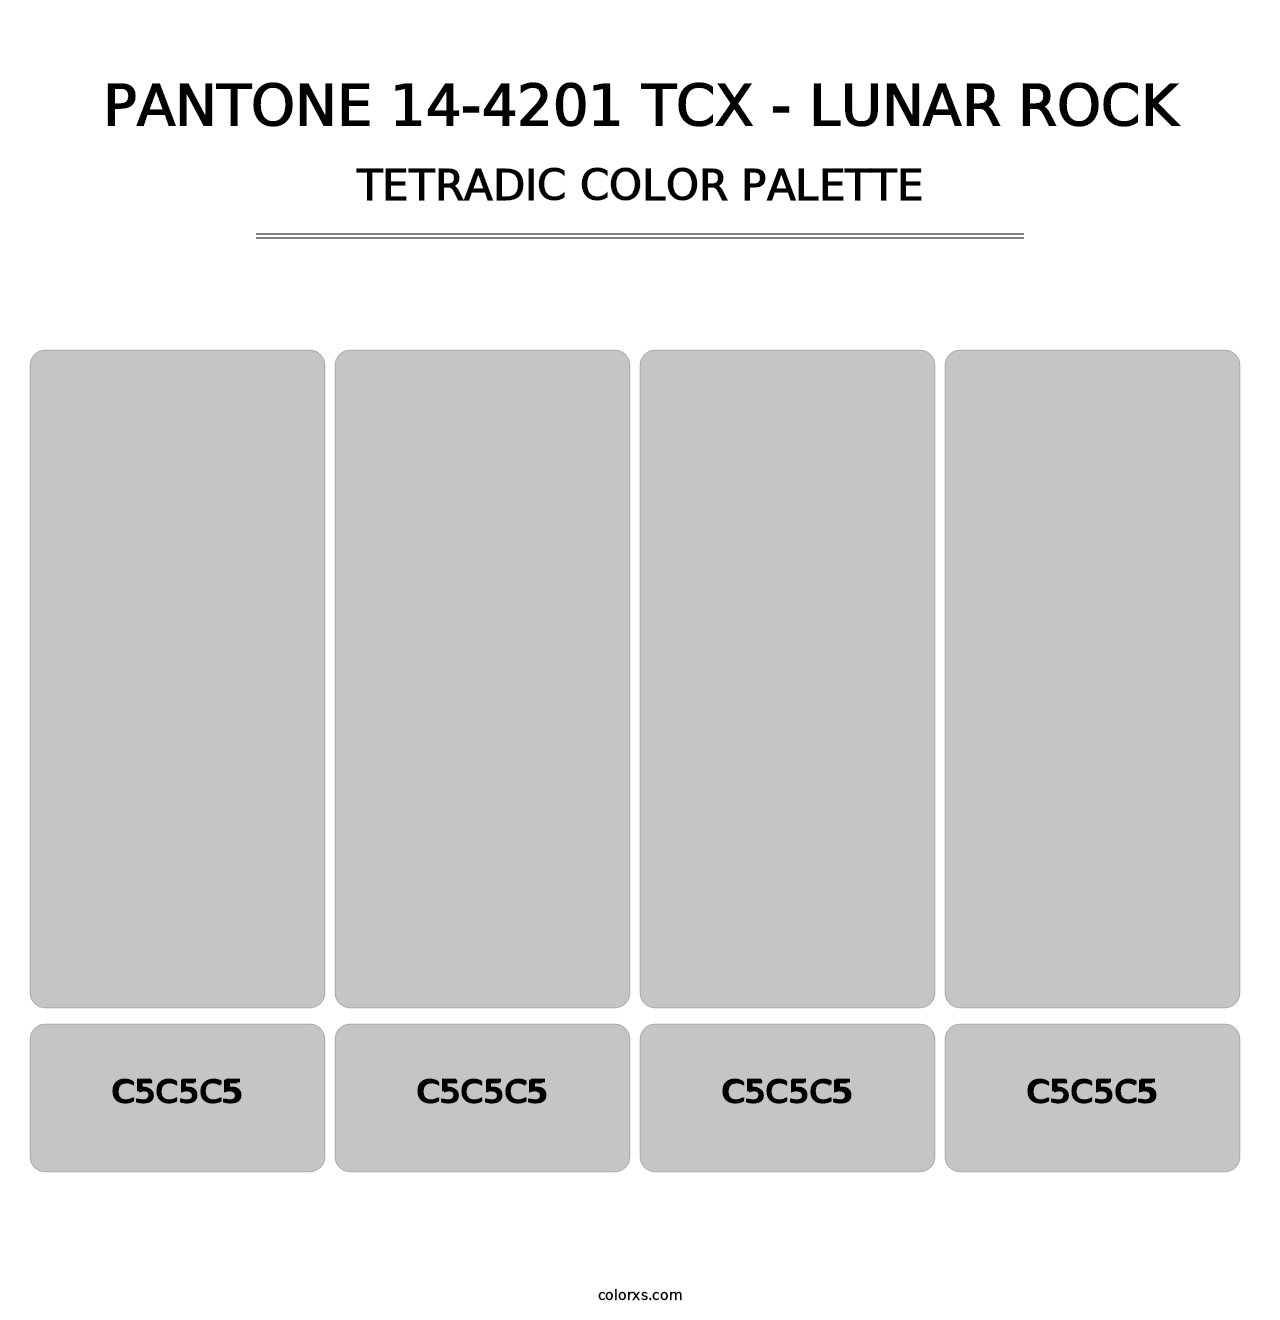 PANTONE 14-4201 TCX - Lunar Rock - Tetradic Color Palette